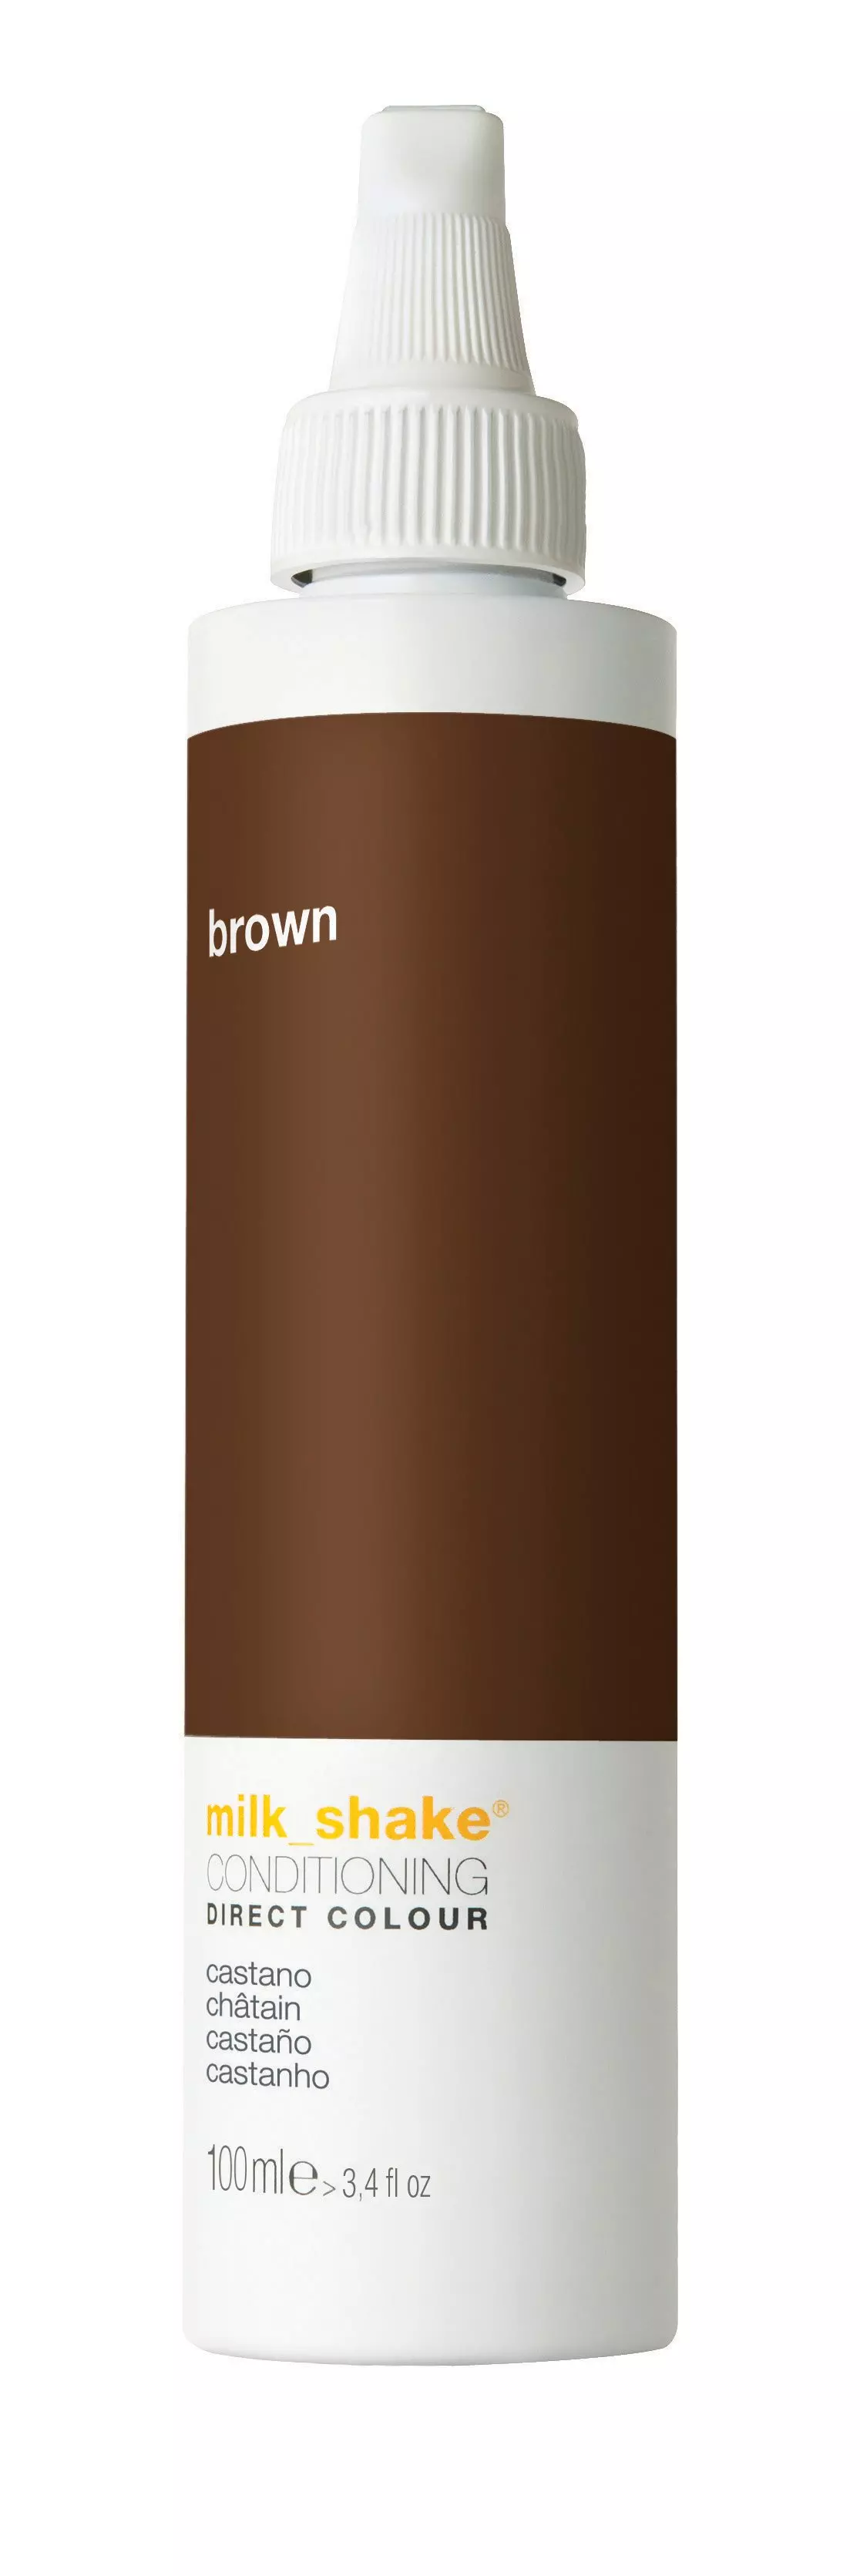 Milkshake Direct Color Ml Brown